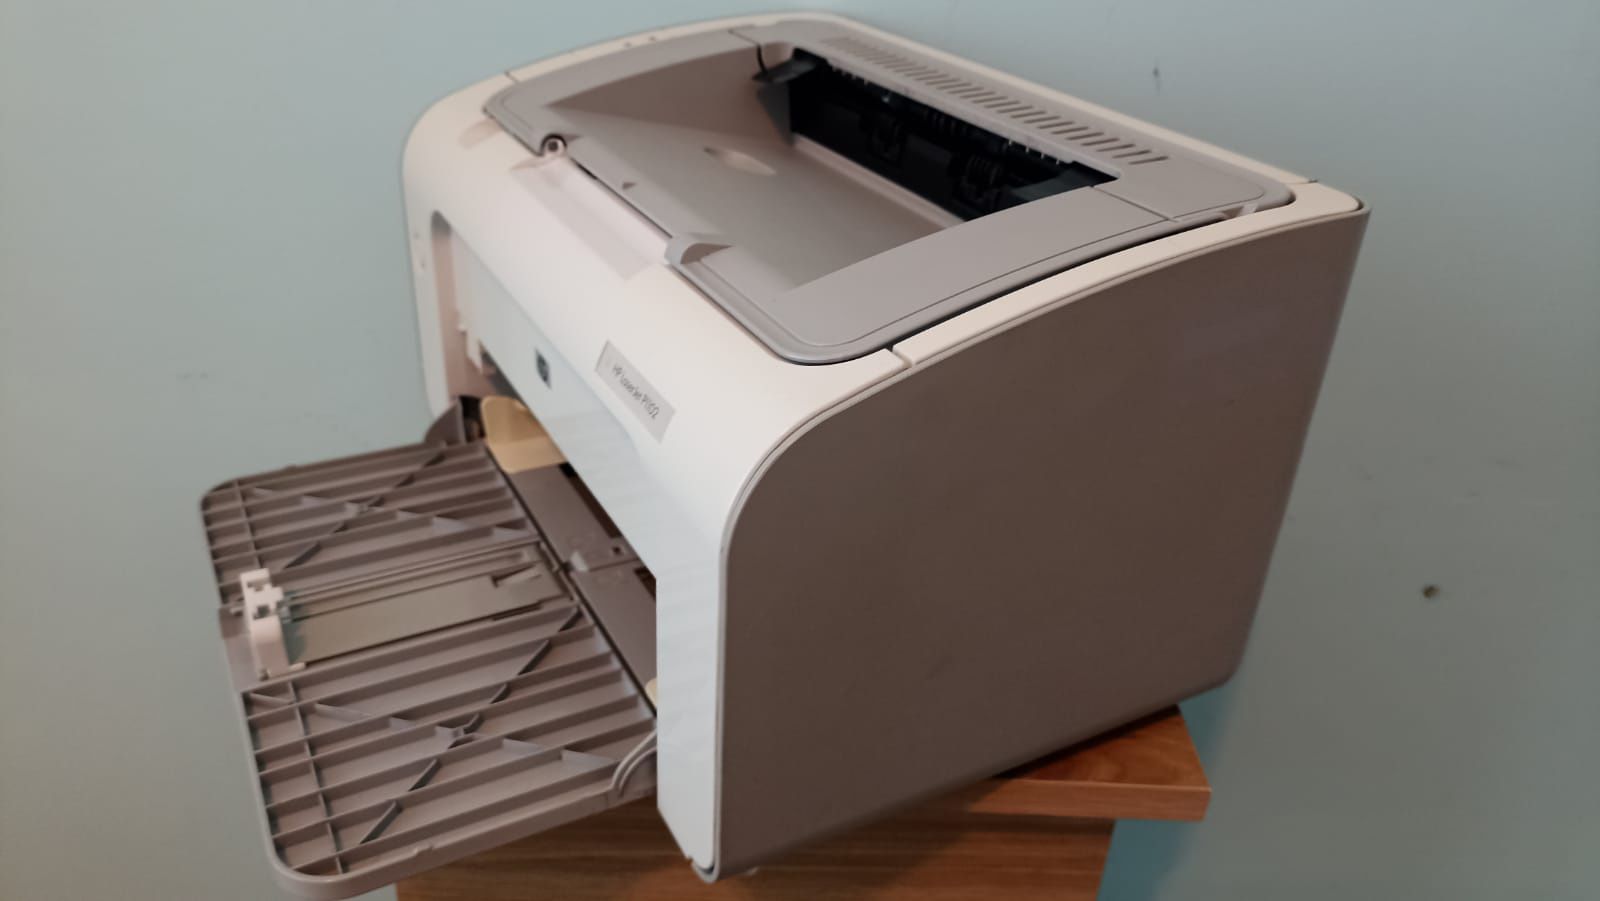 Принтер HP LaserJet 1102